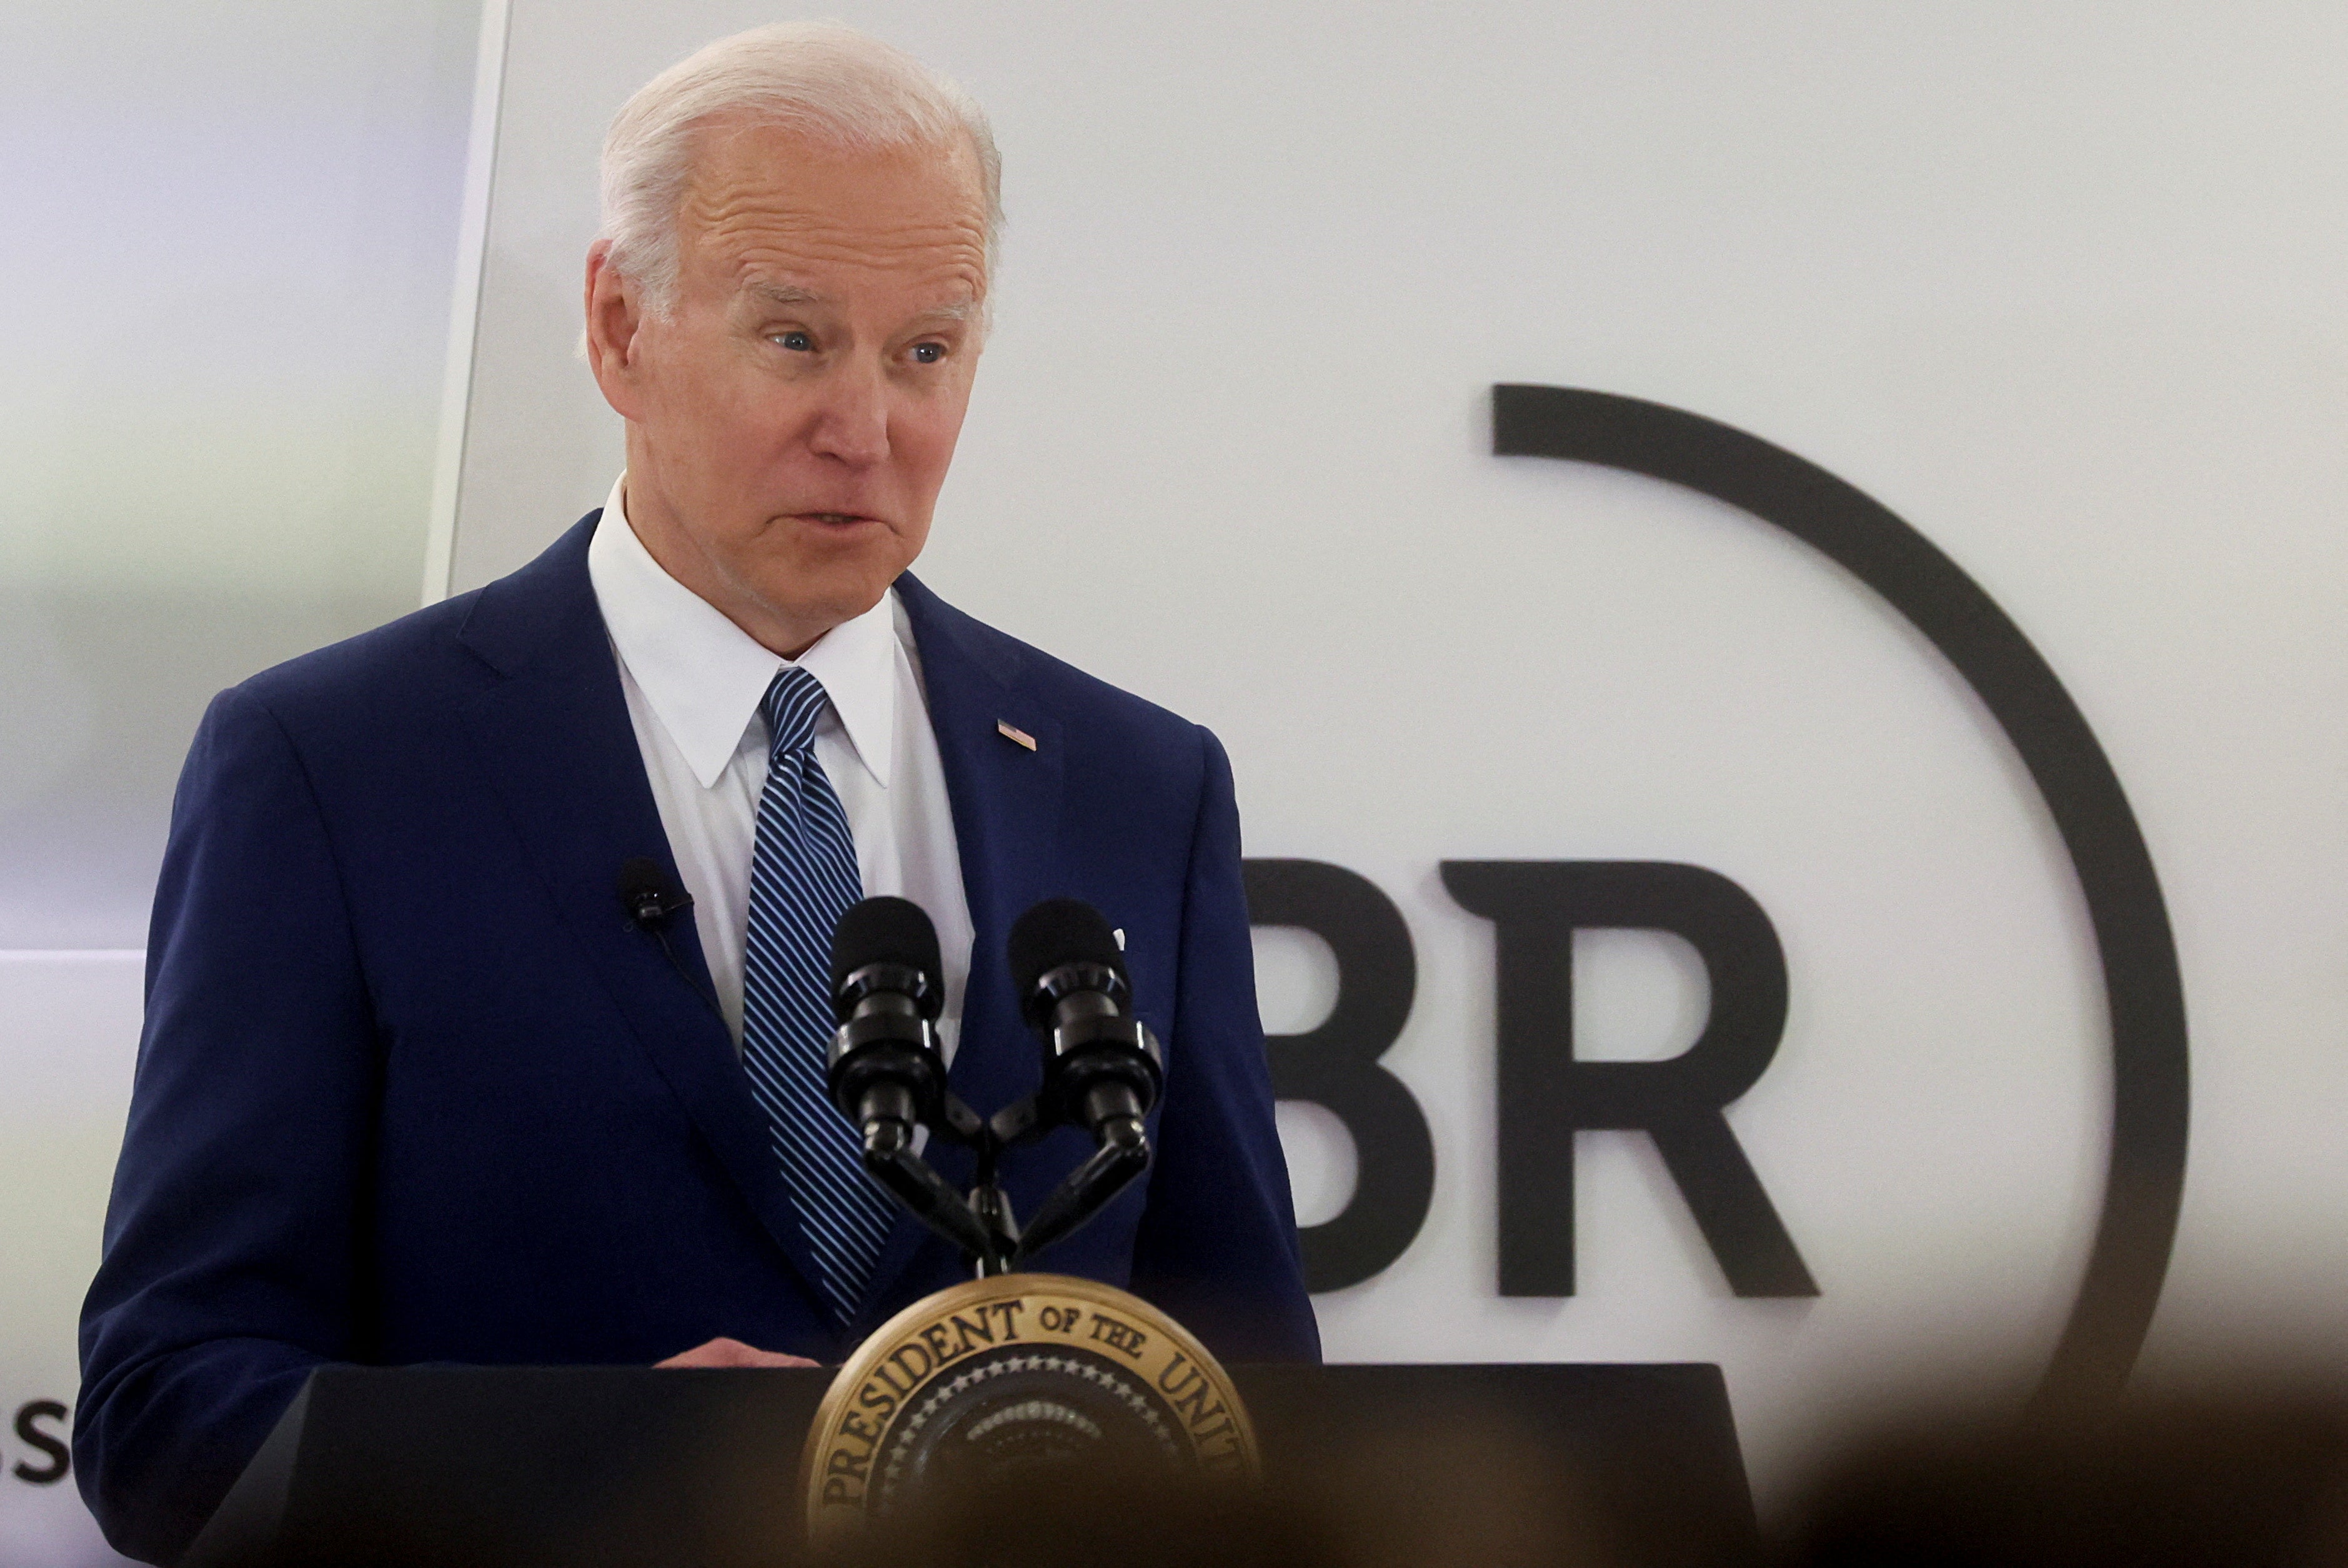 Joe Biden habla de la respuesta de Estados Unidos a la invasión de Rusia en Ucrania y advierte a directivos sobre posibles ciberataques de Rusia en la reunión trimestral de directores generales de Business Roundtable en Washington D.C.